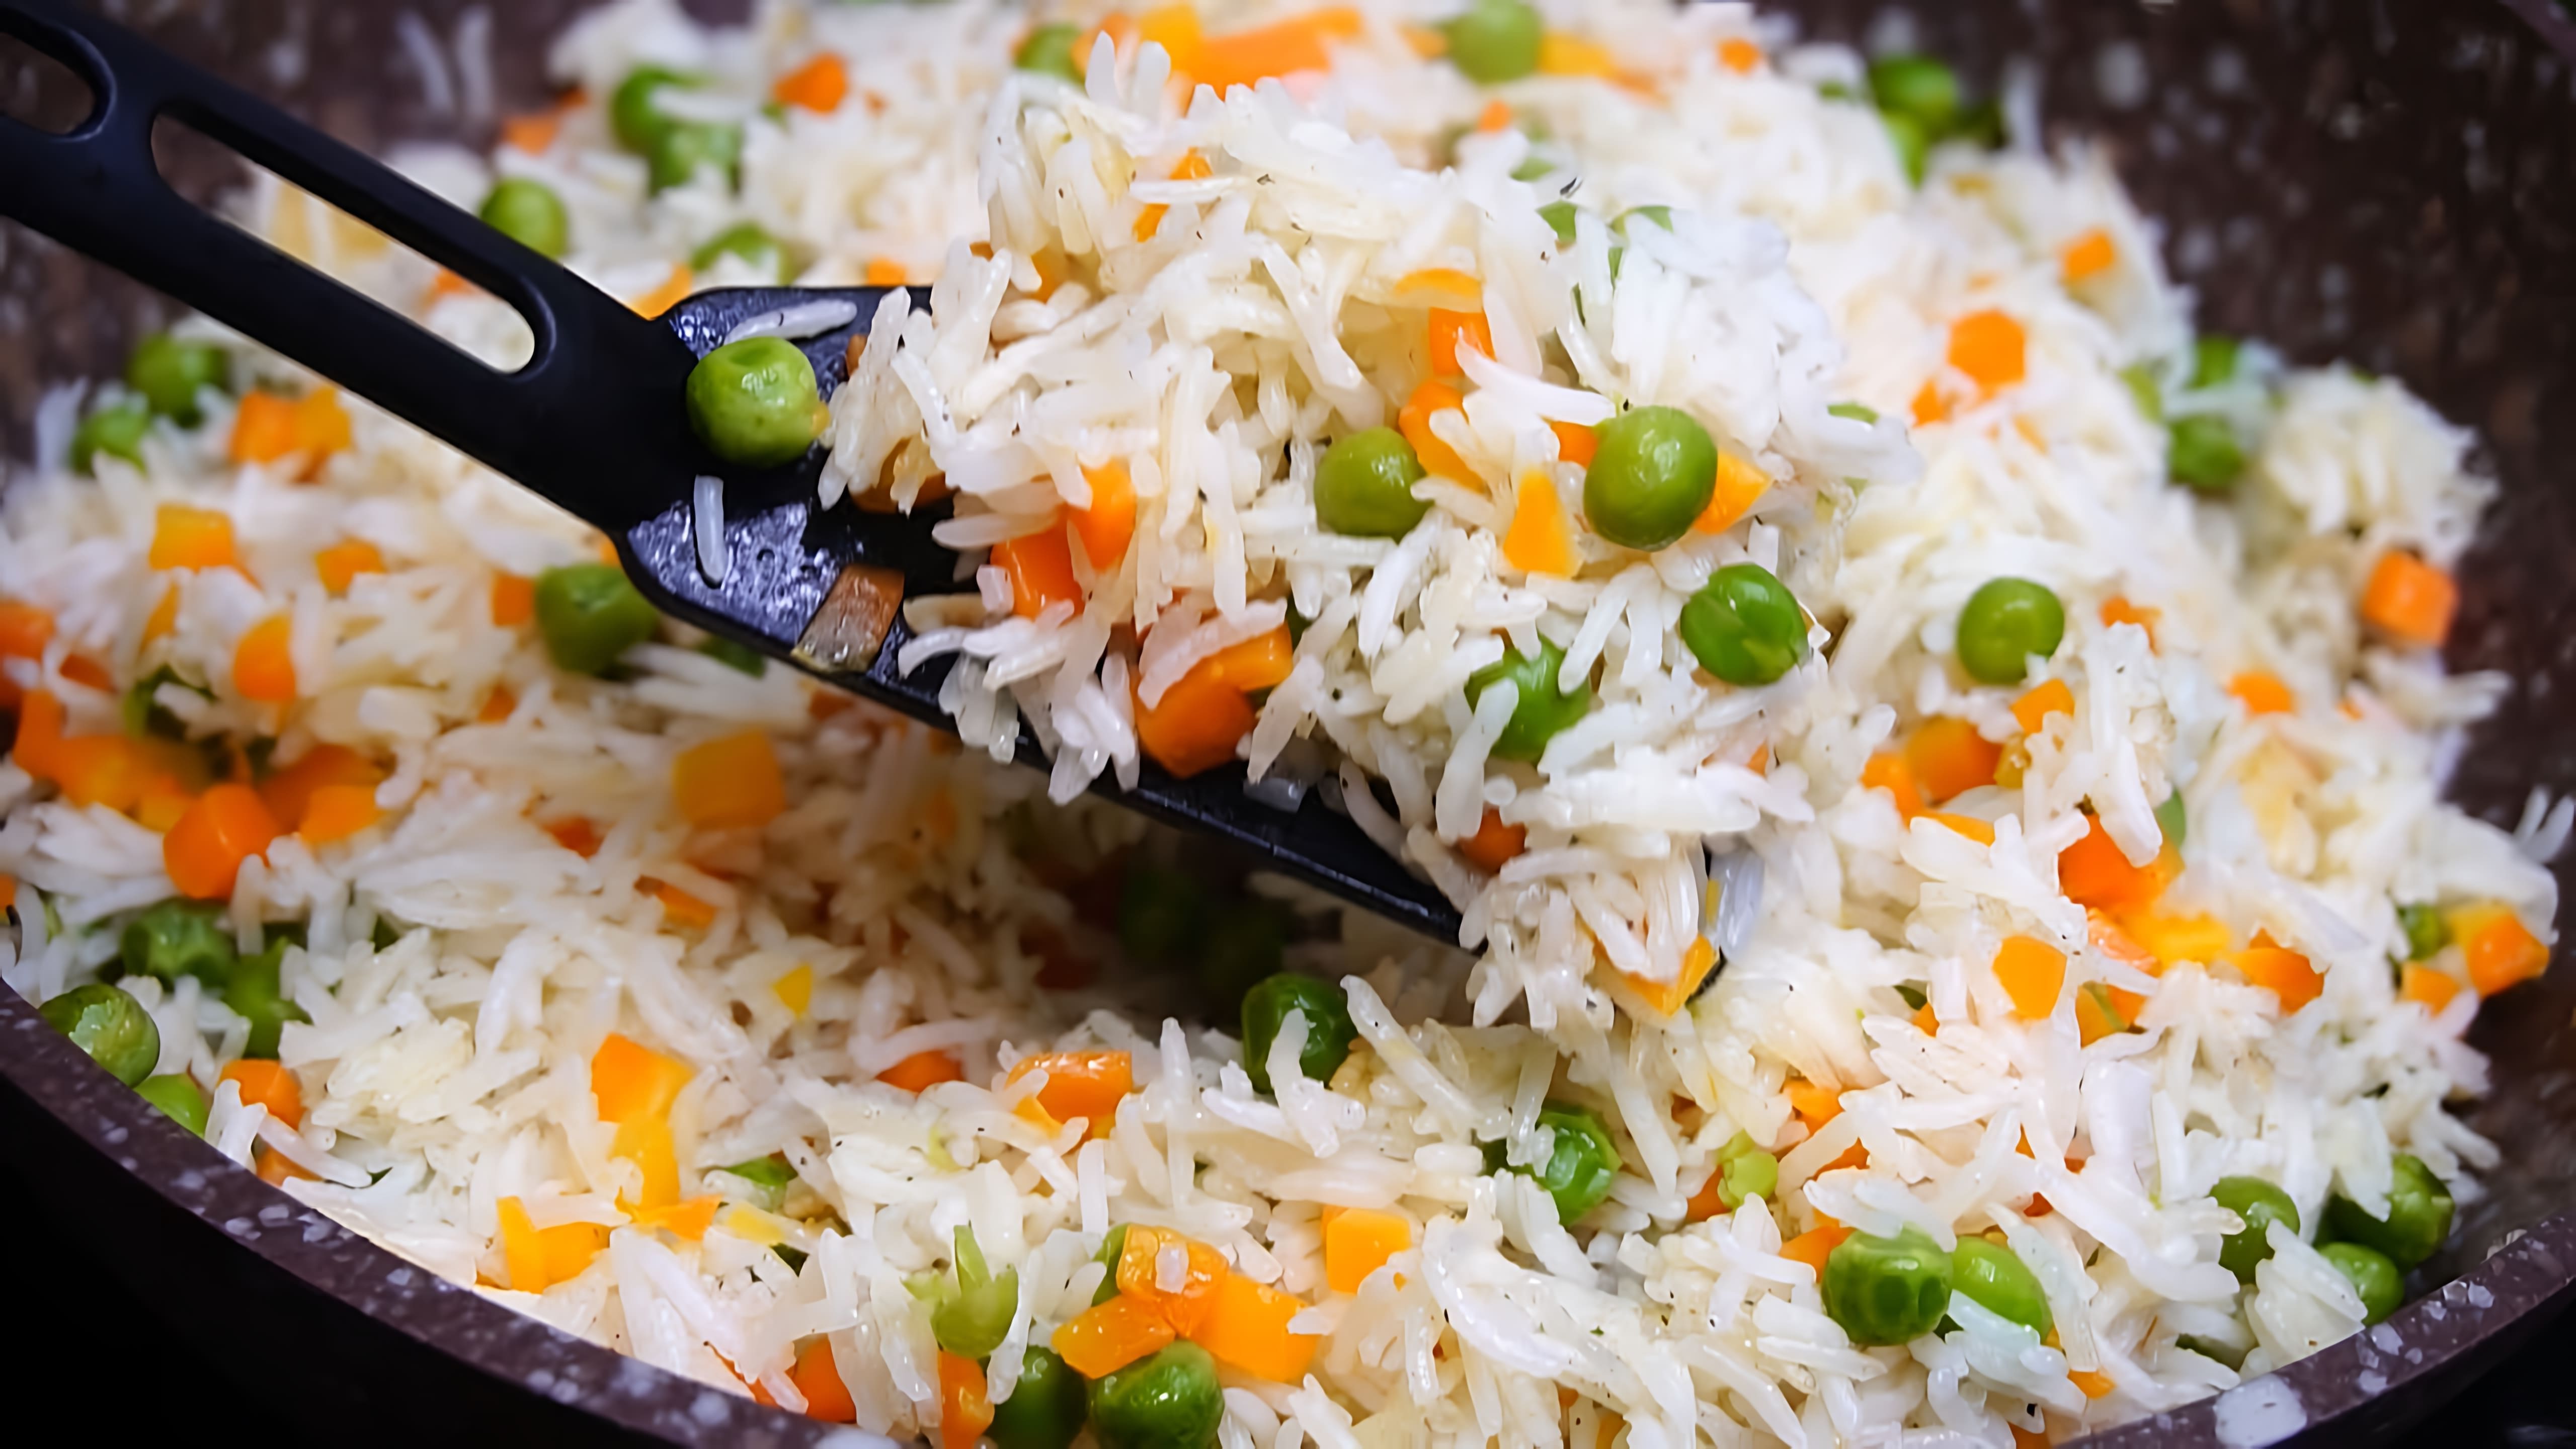 Видео рецепт риса с овощами, приготовленного на сковороде, что делает его простым, но вкусным гарниром